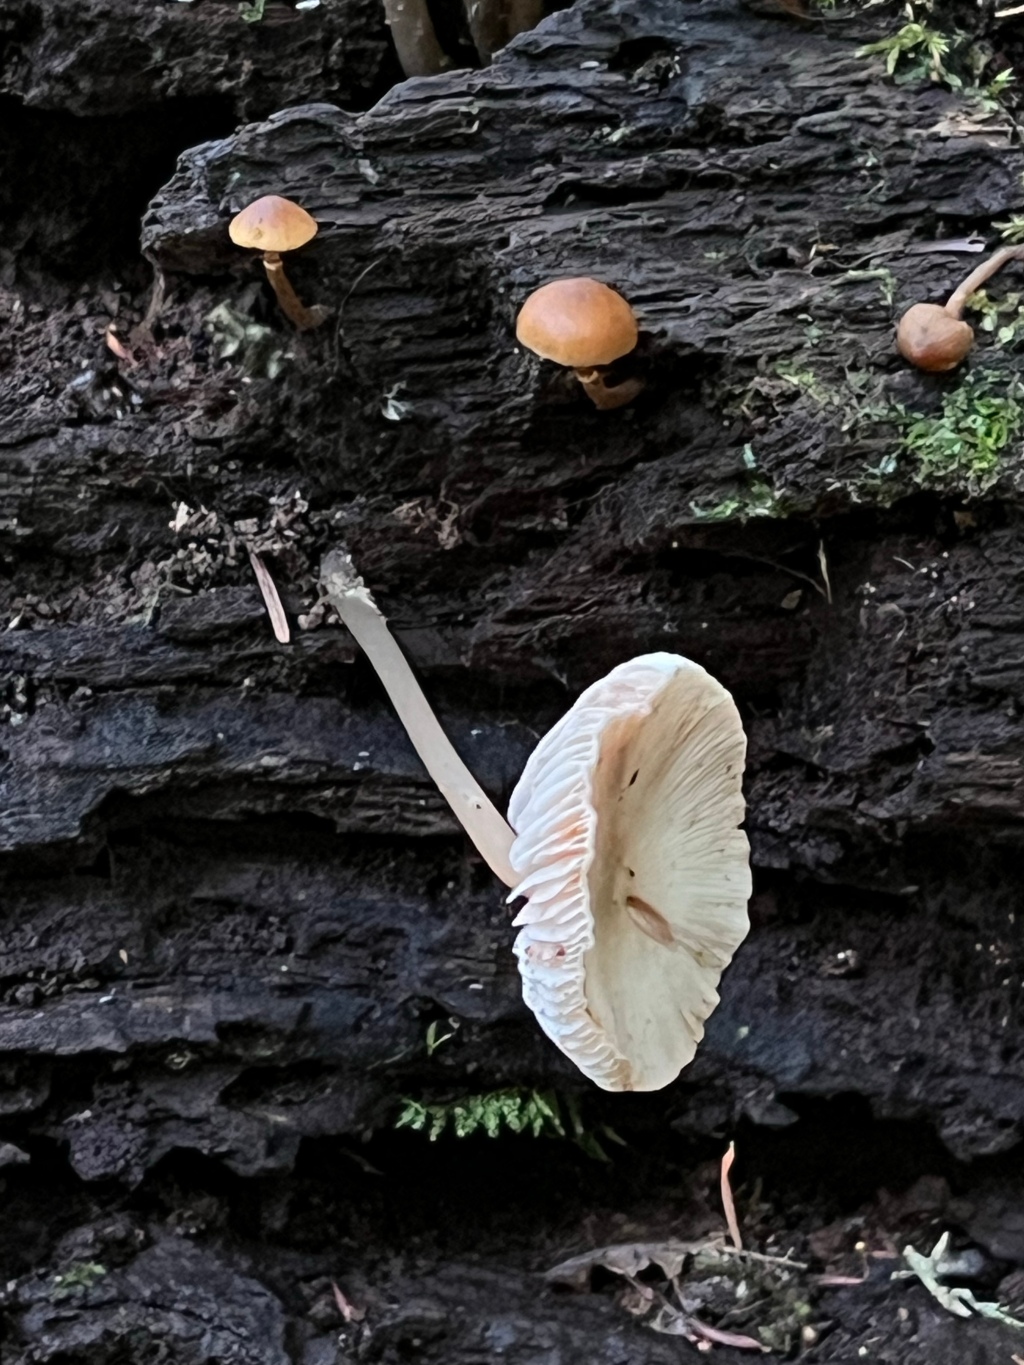 It’s mushroom season again!